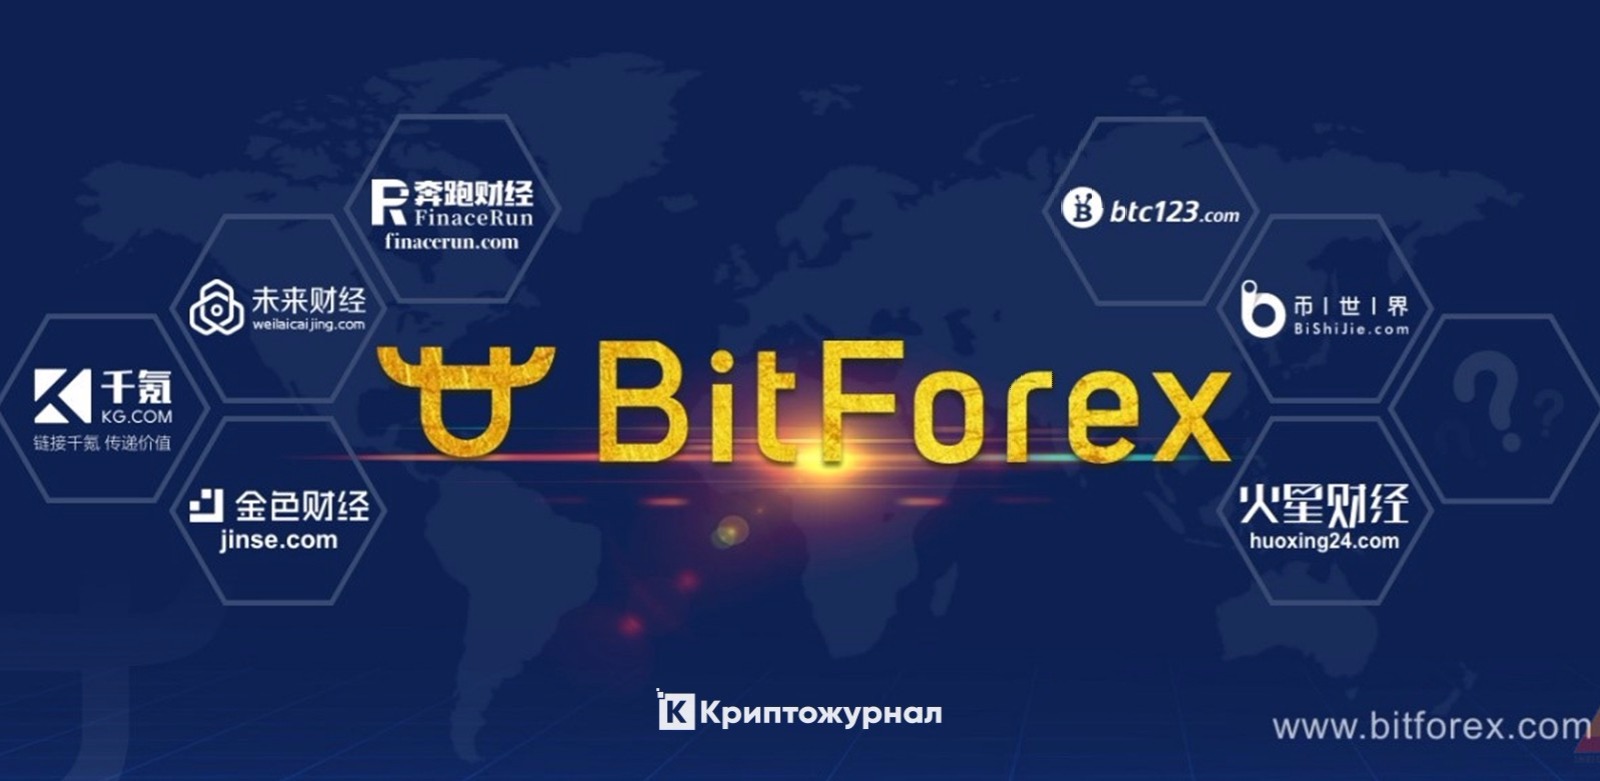 Bitten биржа. BITFOREX биржа. Bit forex. Биржа bit com. BITFOREX logo.